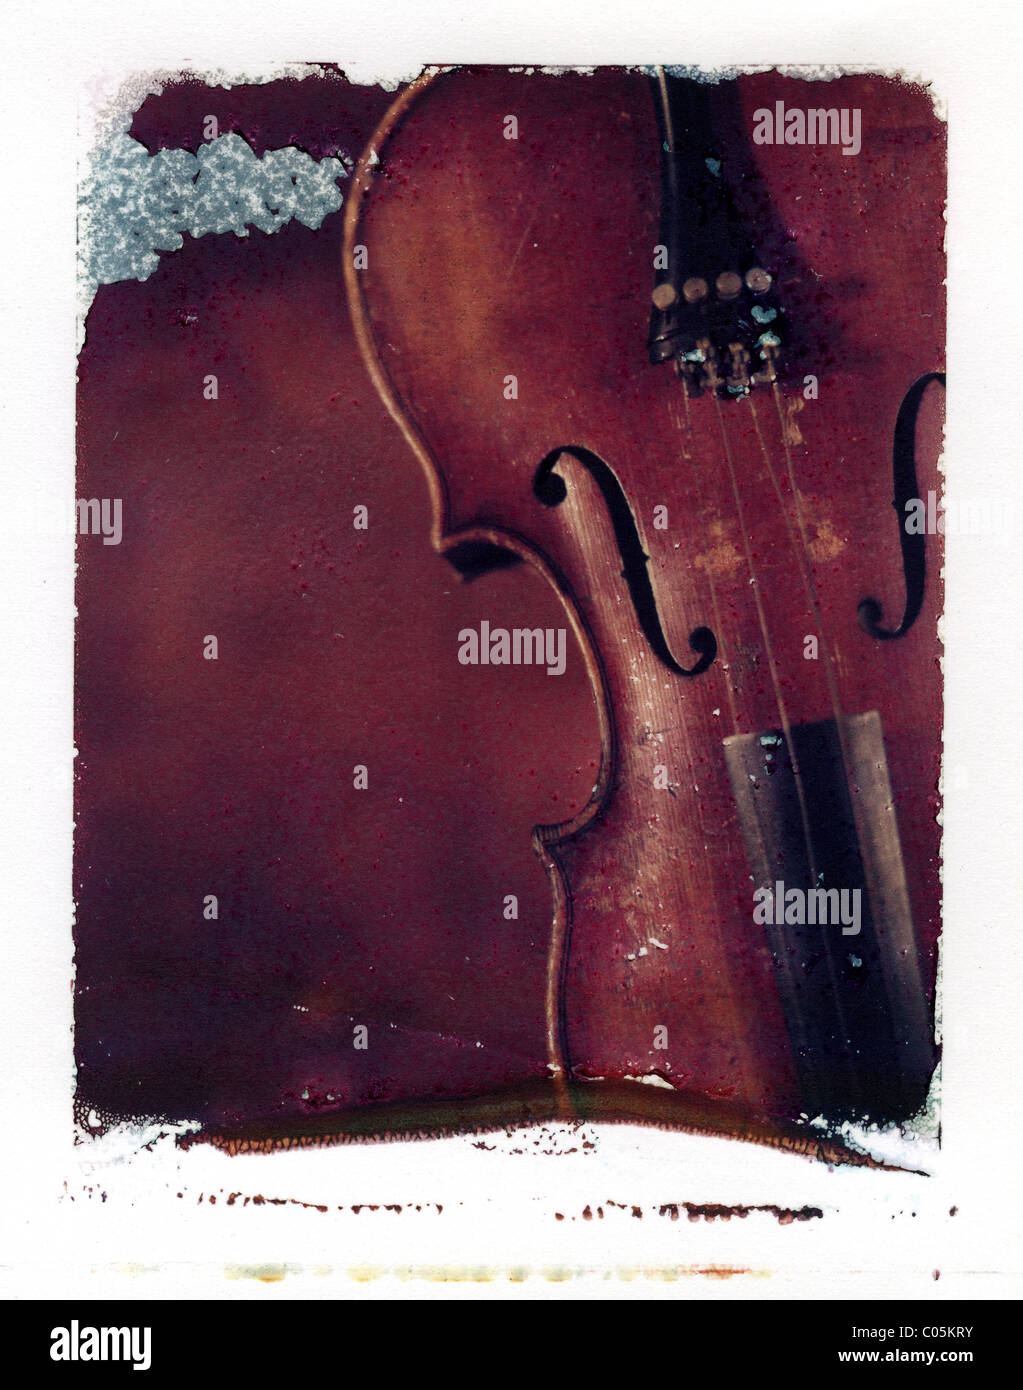 Une émulsion polaroid transfert d'un ancien violon Banque D'Images